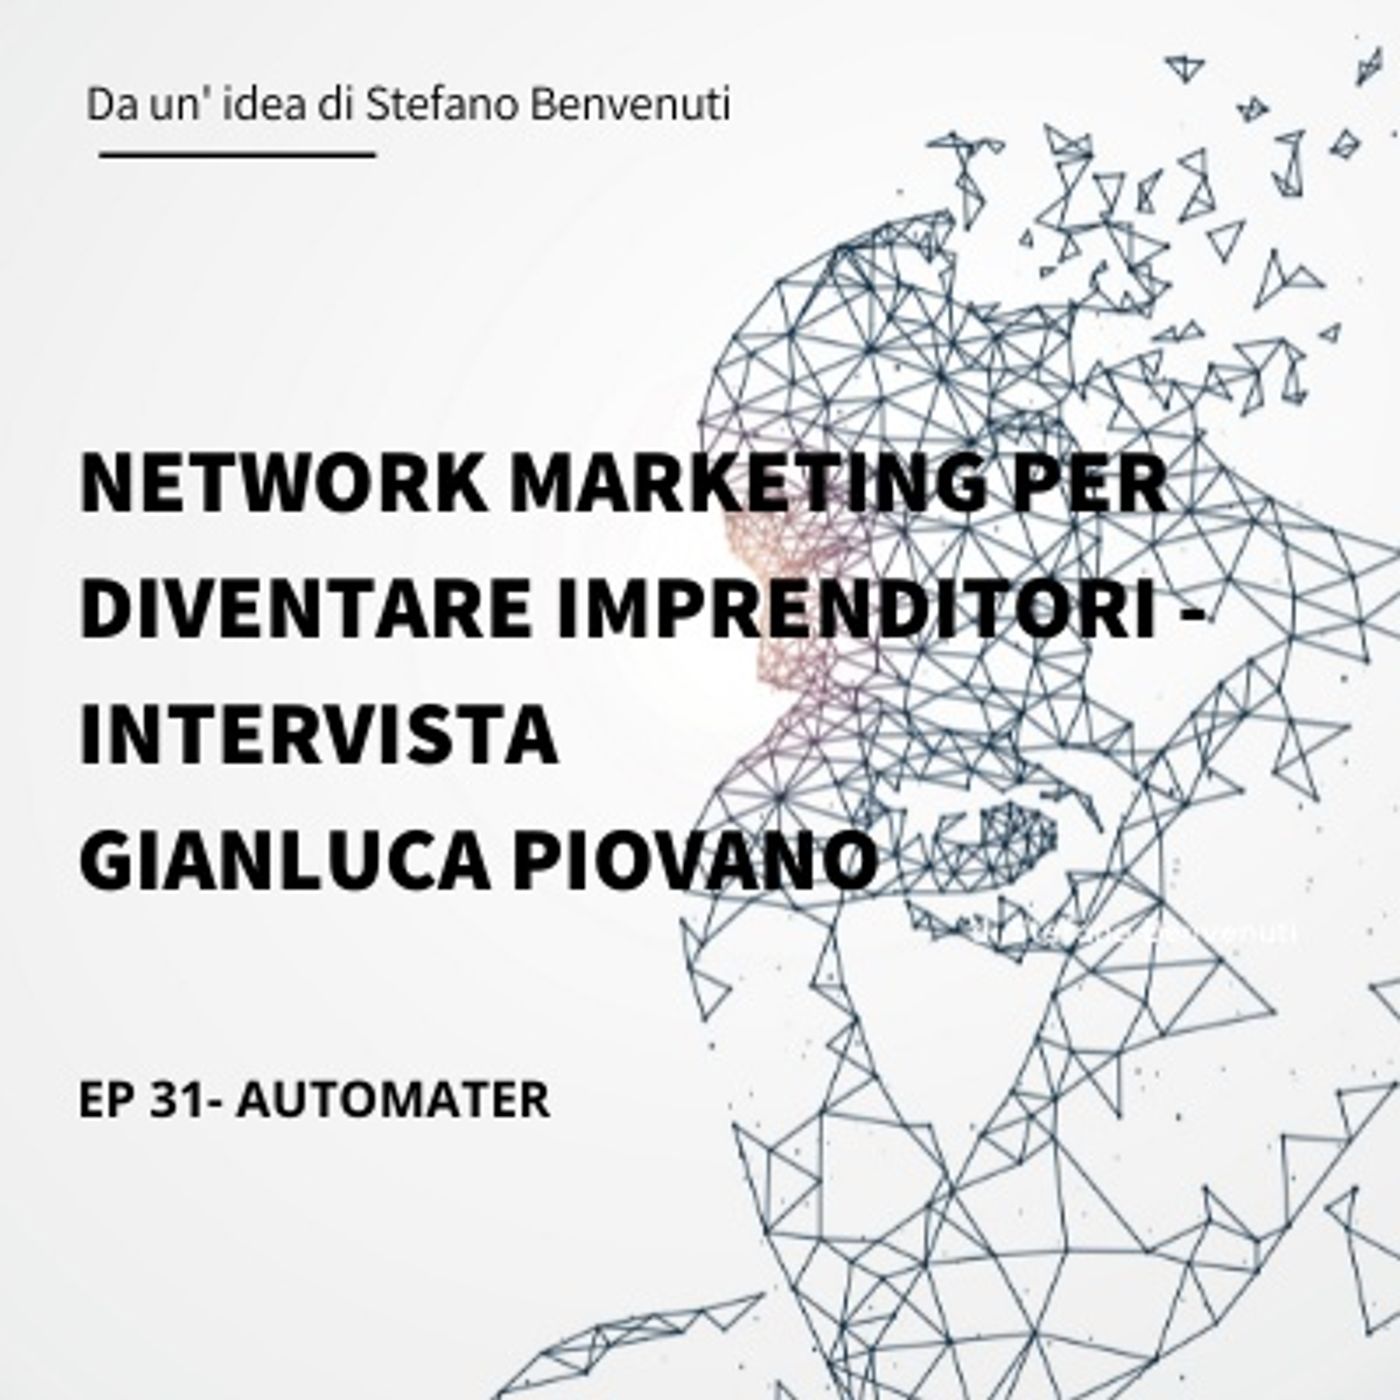 31 - Network Marketing per diventare imprenditori - Intervista Gianluca Piovano